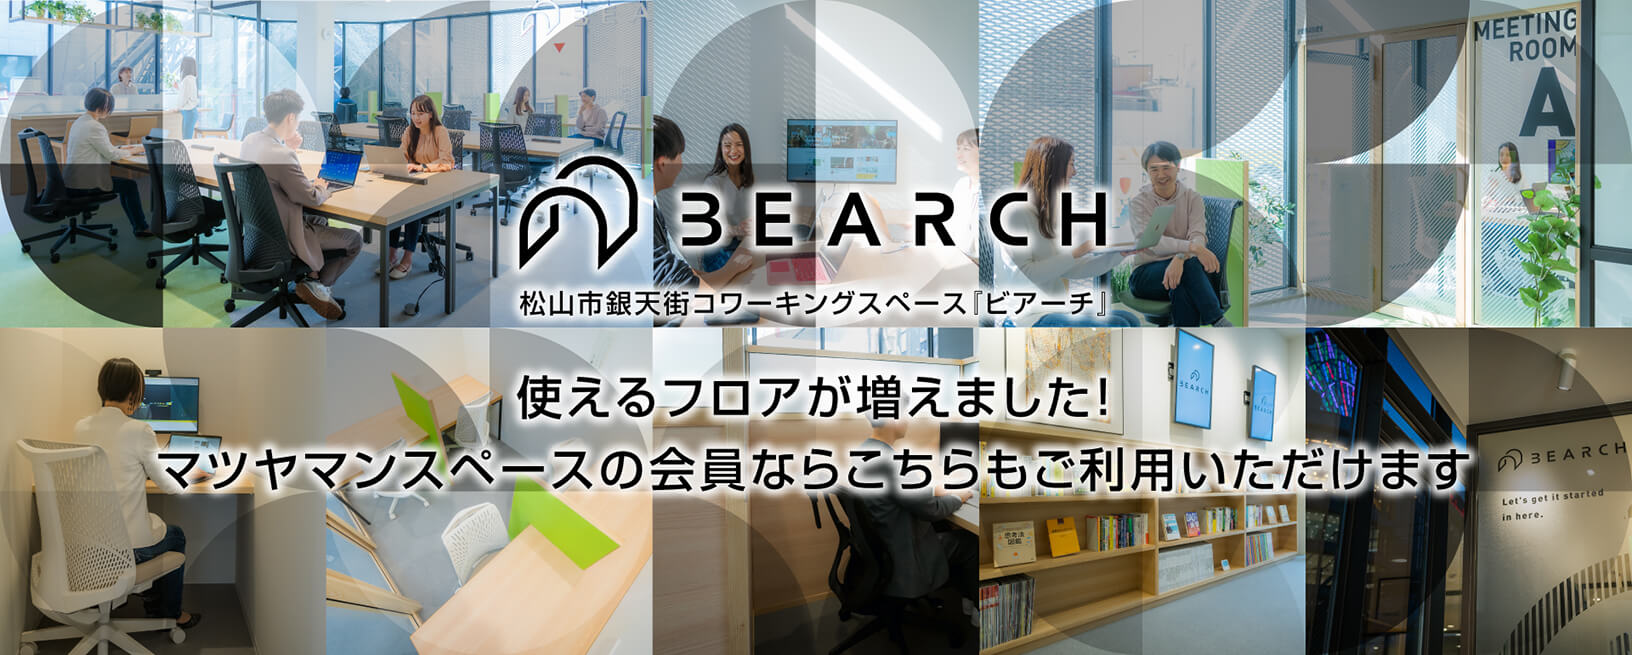 松山市銀天街コワーキングスペース「BEARCH（ビアーチ）」